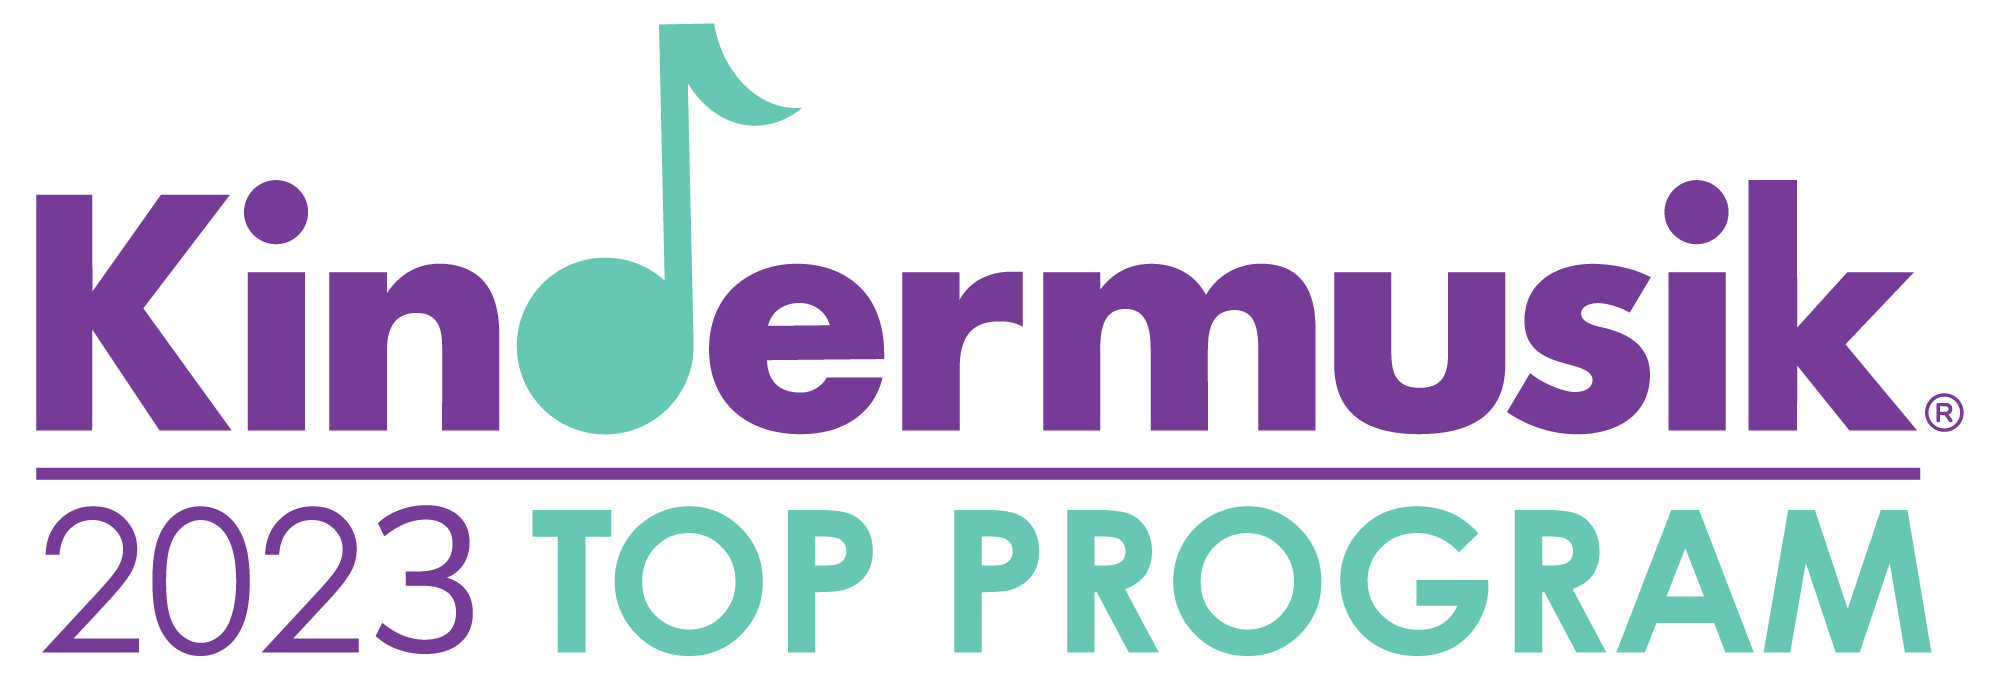 TopProgram-2023-Logo